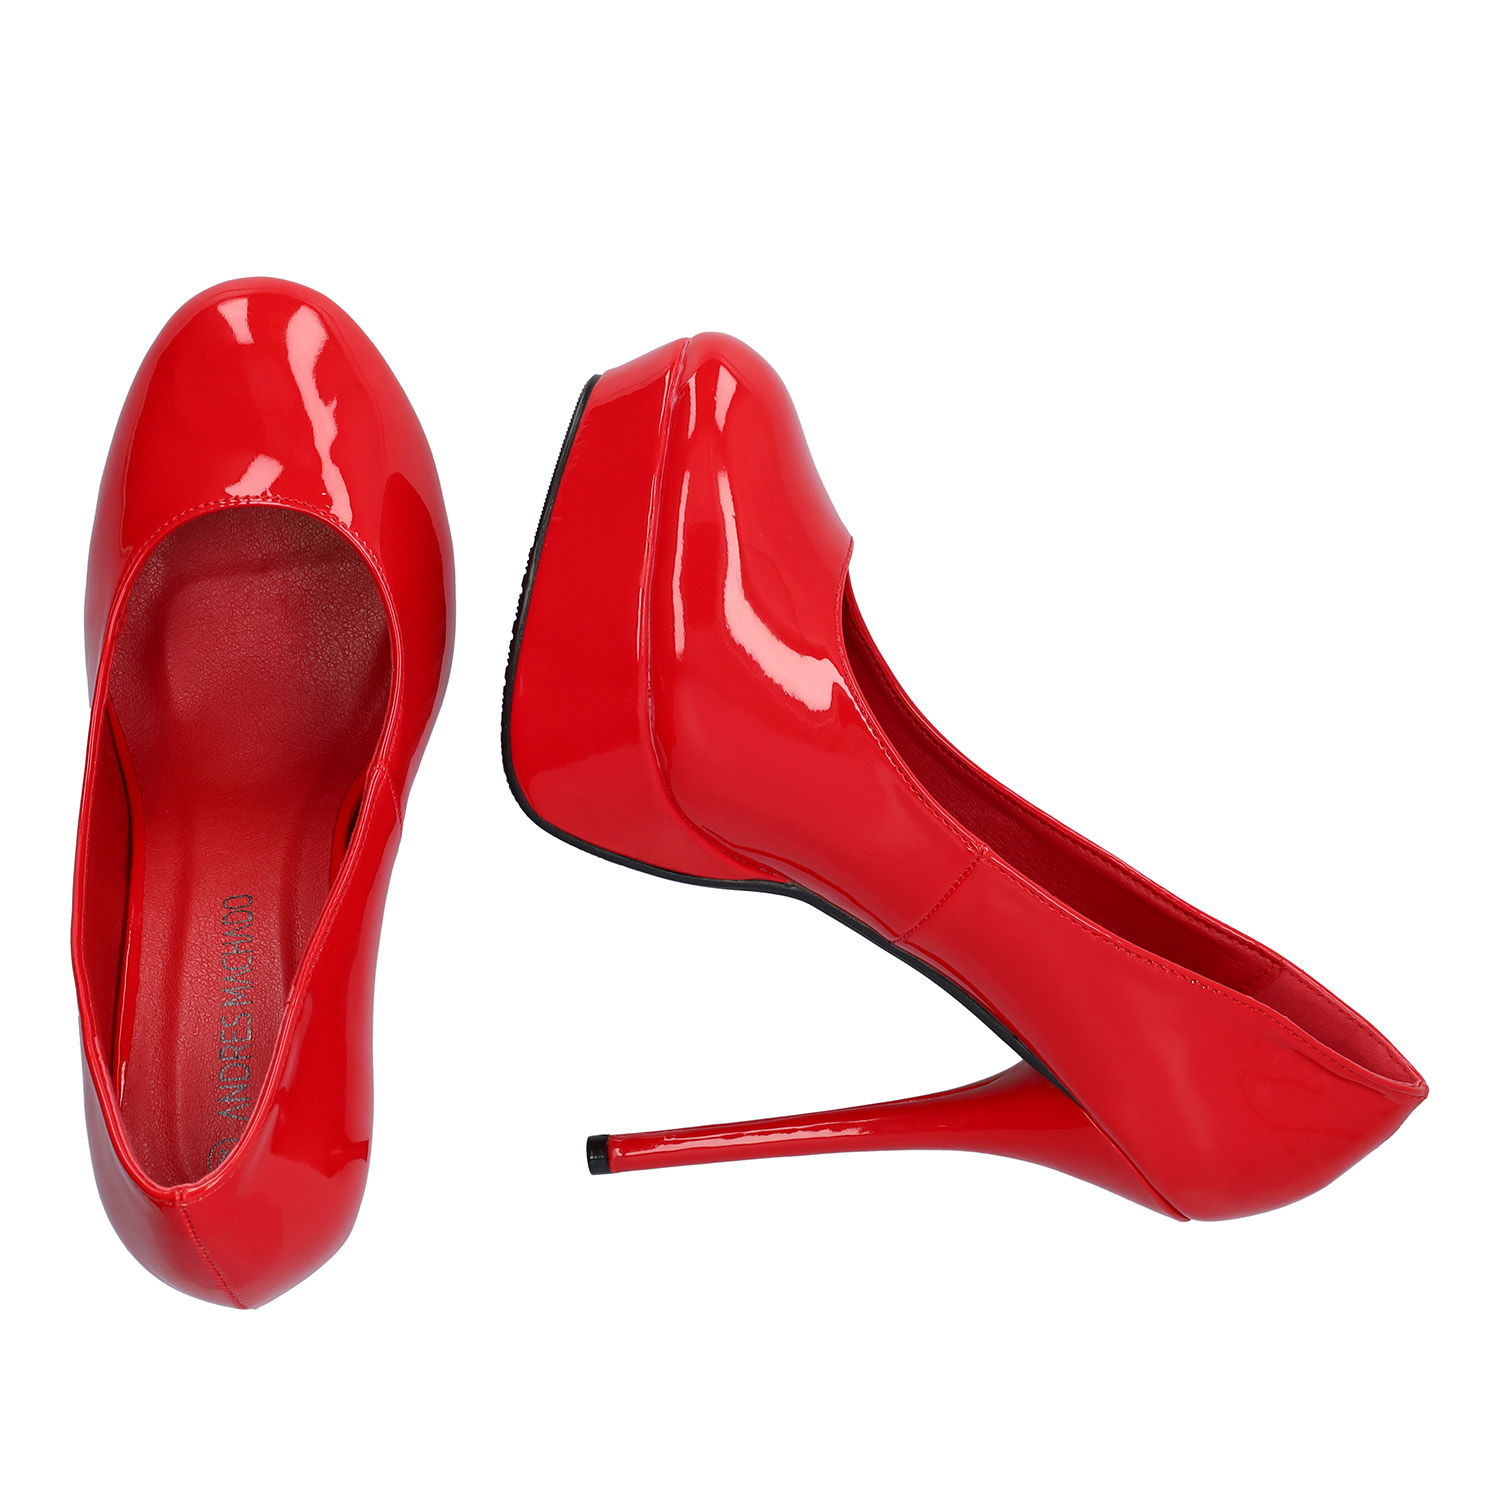 Red Patent Platform Pumps with Stiletto Heel 